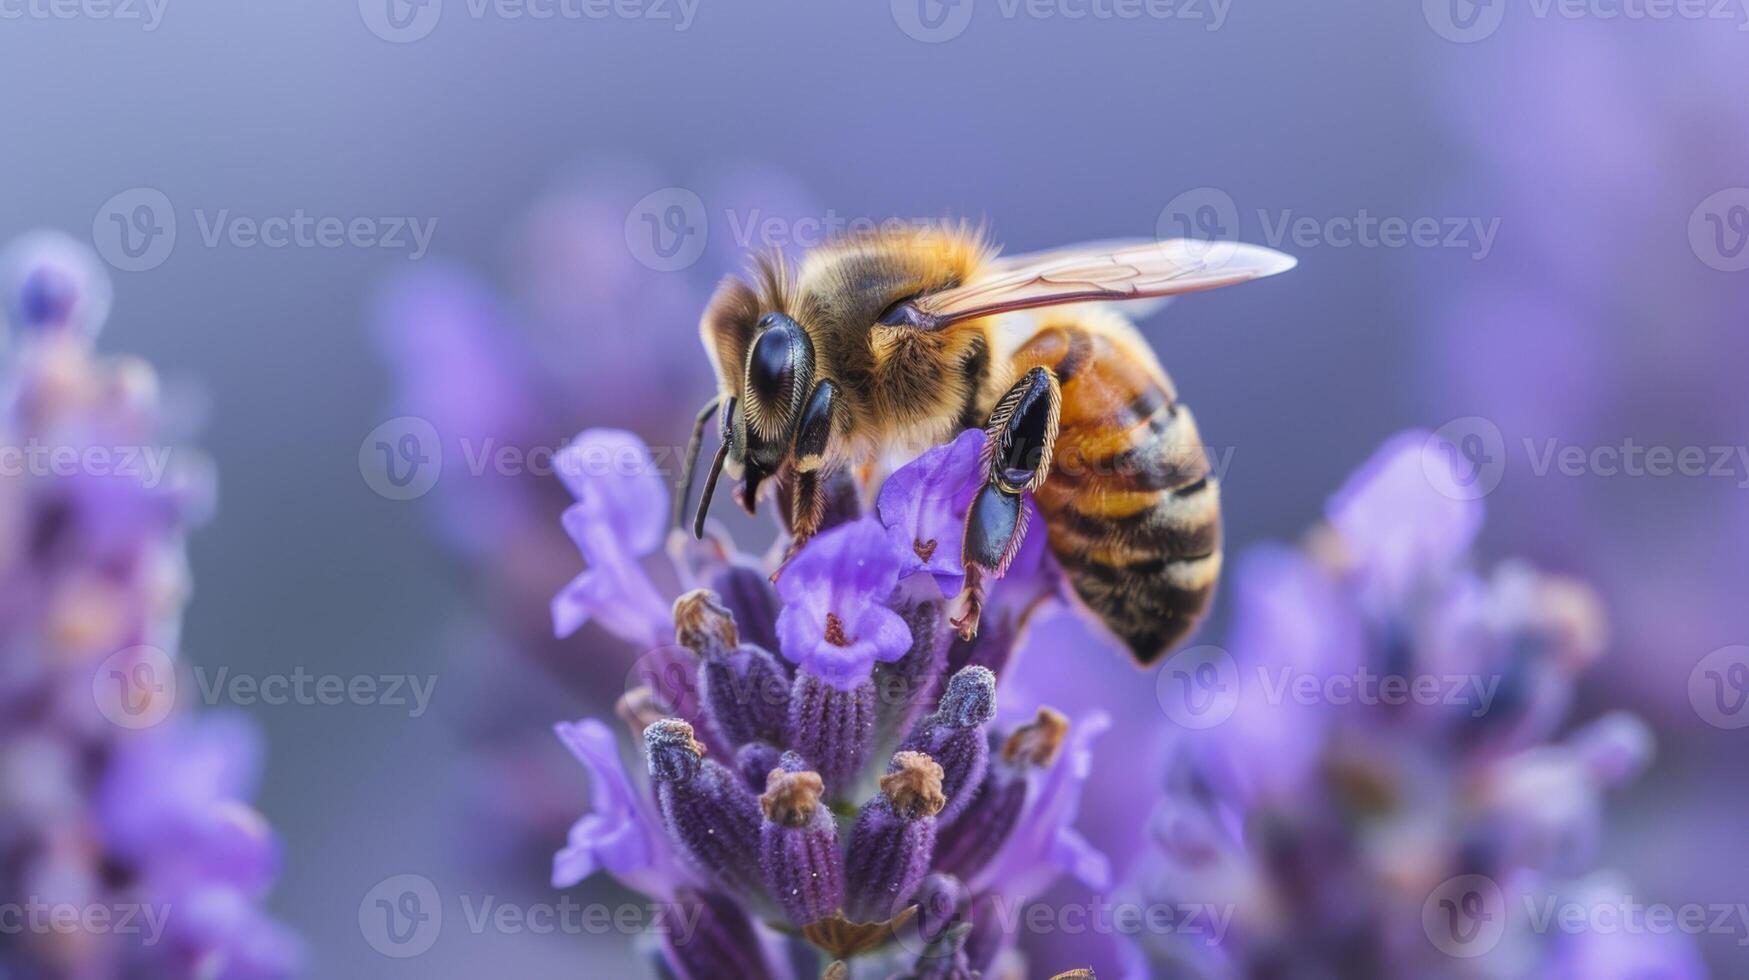 Biene auf Lavendel demonstriert Bestäubung mit Insekt inmitten Flora während Tierwelt Makro Fotografie im Natur foto